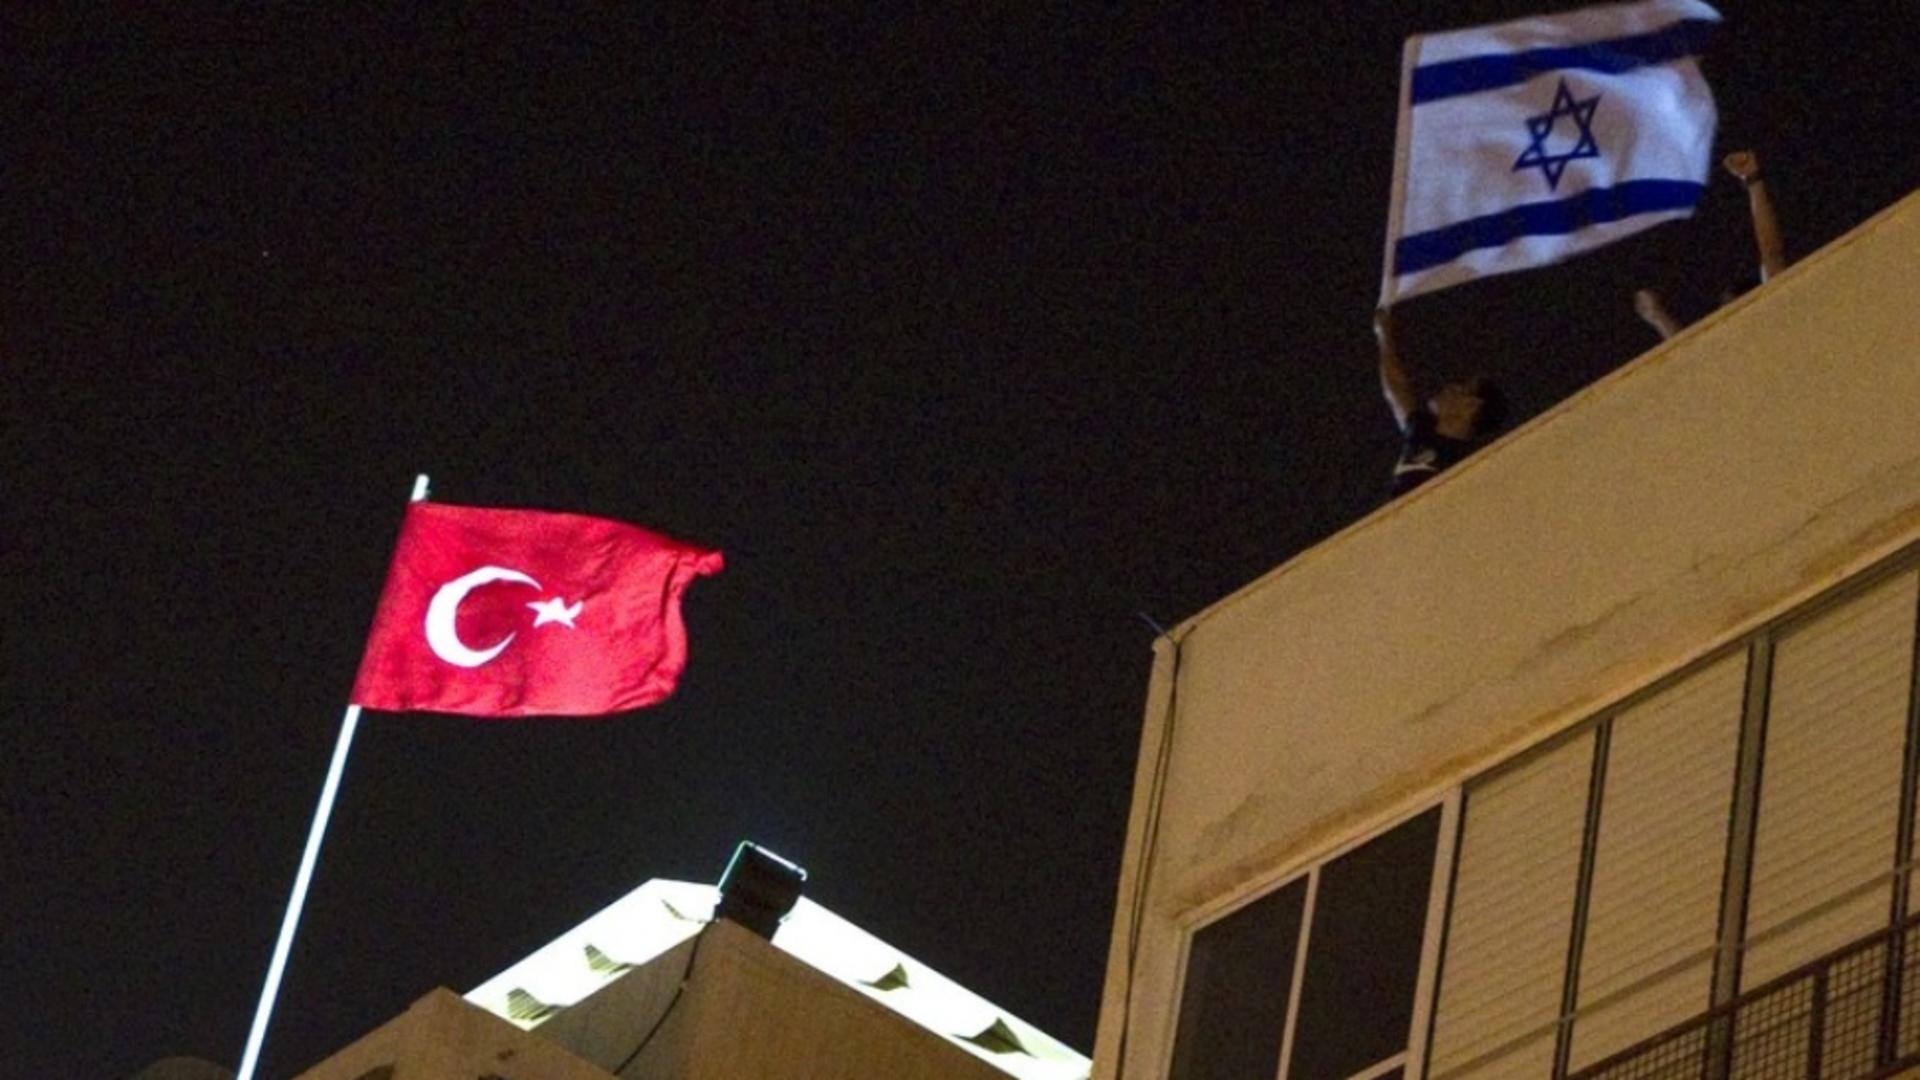  Israelul și-a retras toți diplomații din Turcia din cauza preocupărilor pentru securitatea lor  Foto: Profimedia